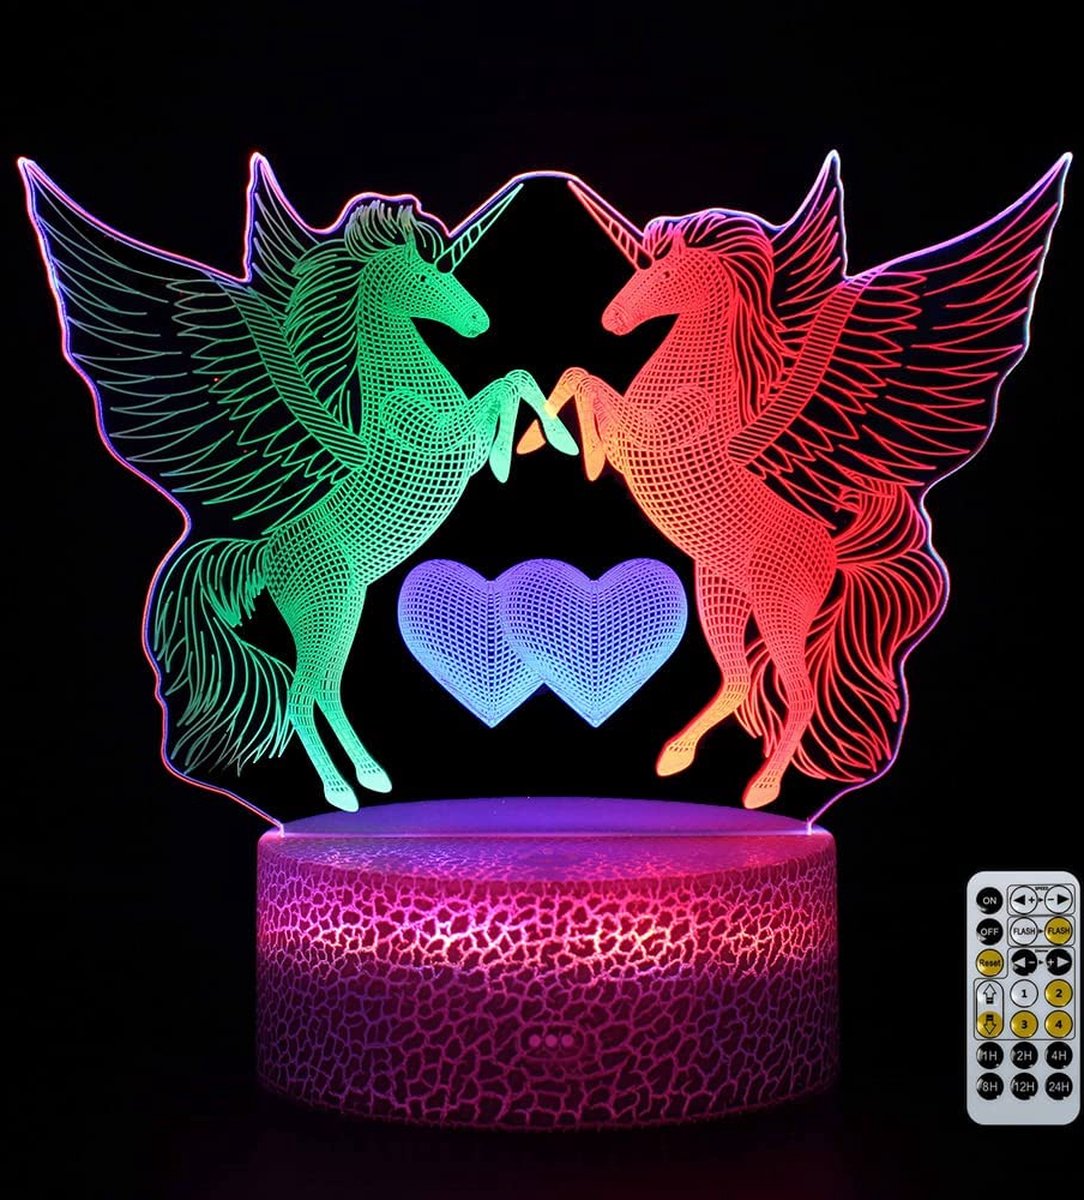 AO® Nachtlamp – 3D lamp – 16 Kleuren – Bureaulamp – Unicorn - Sfeerlamp – Nachtlampje Kinderen – Creative lamp - Met afstandsbediening